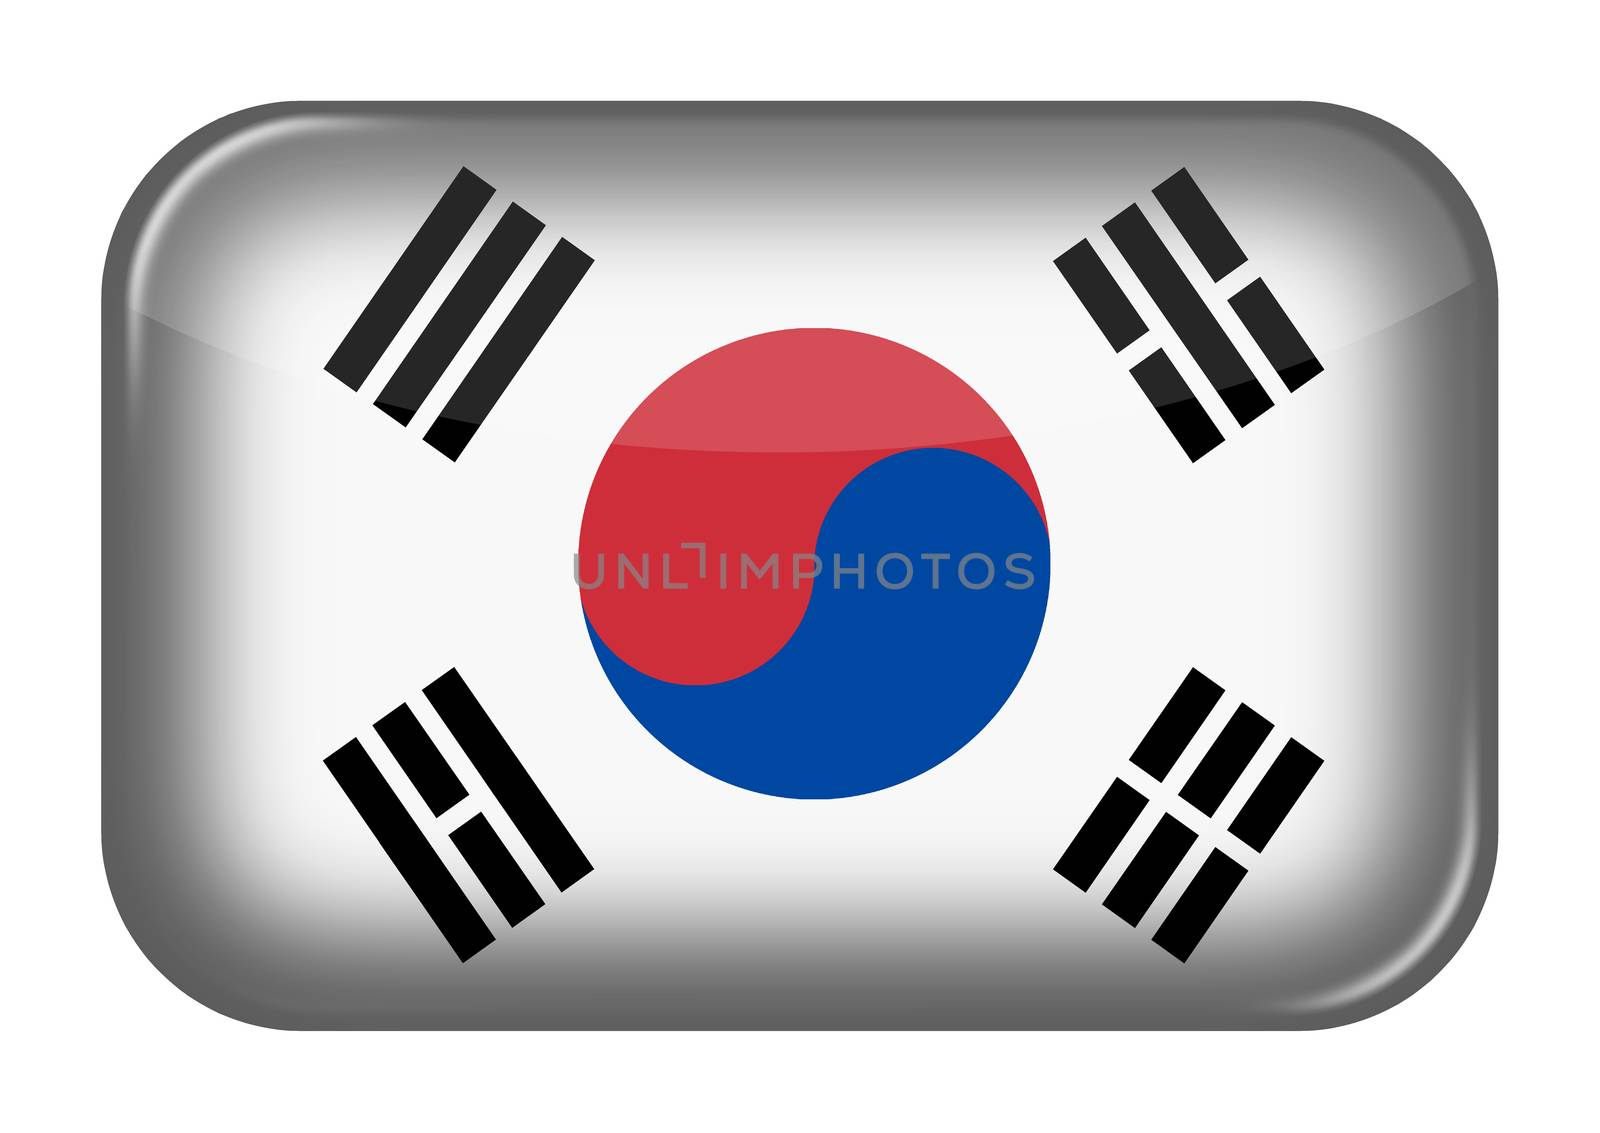 A South Korea Korea web icon rectangle button with clipping path